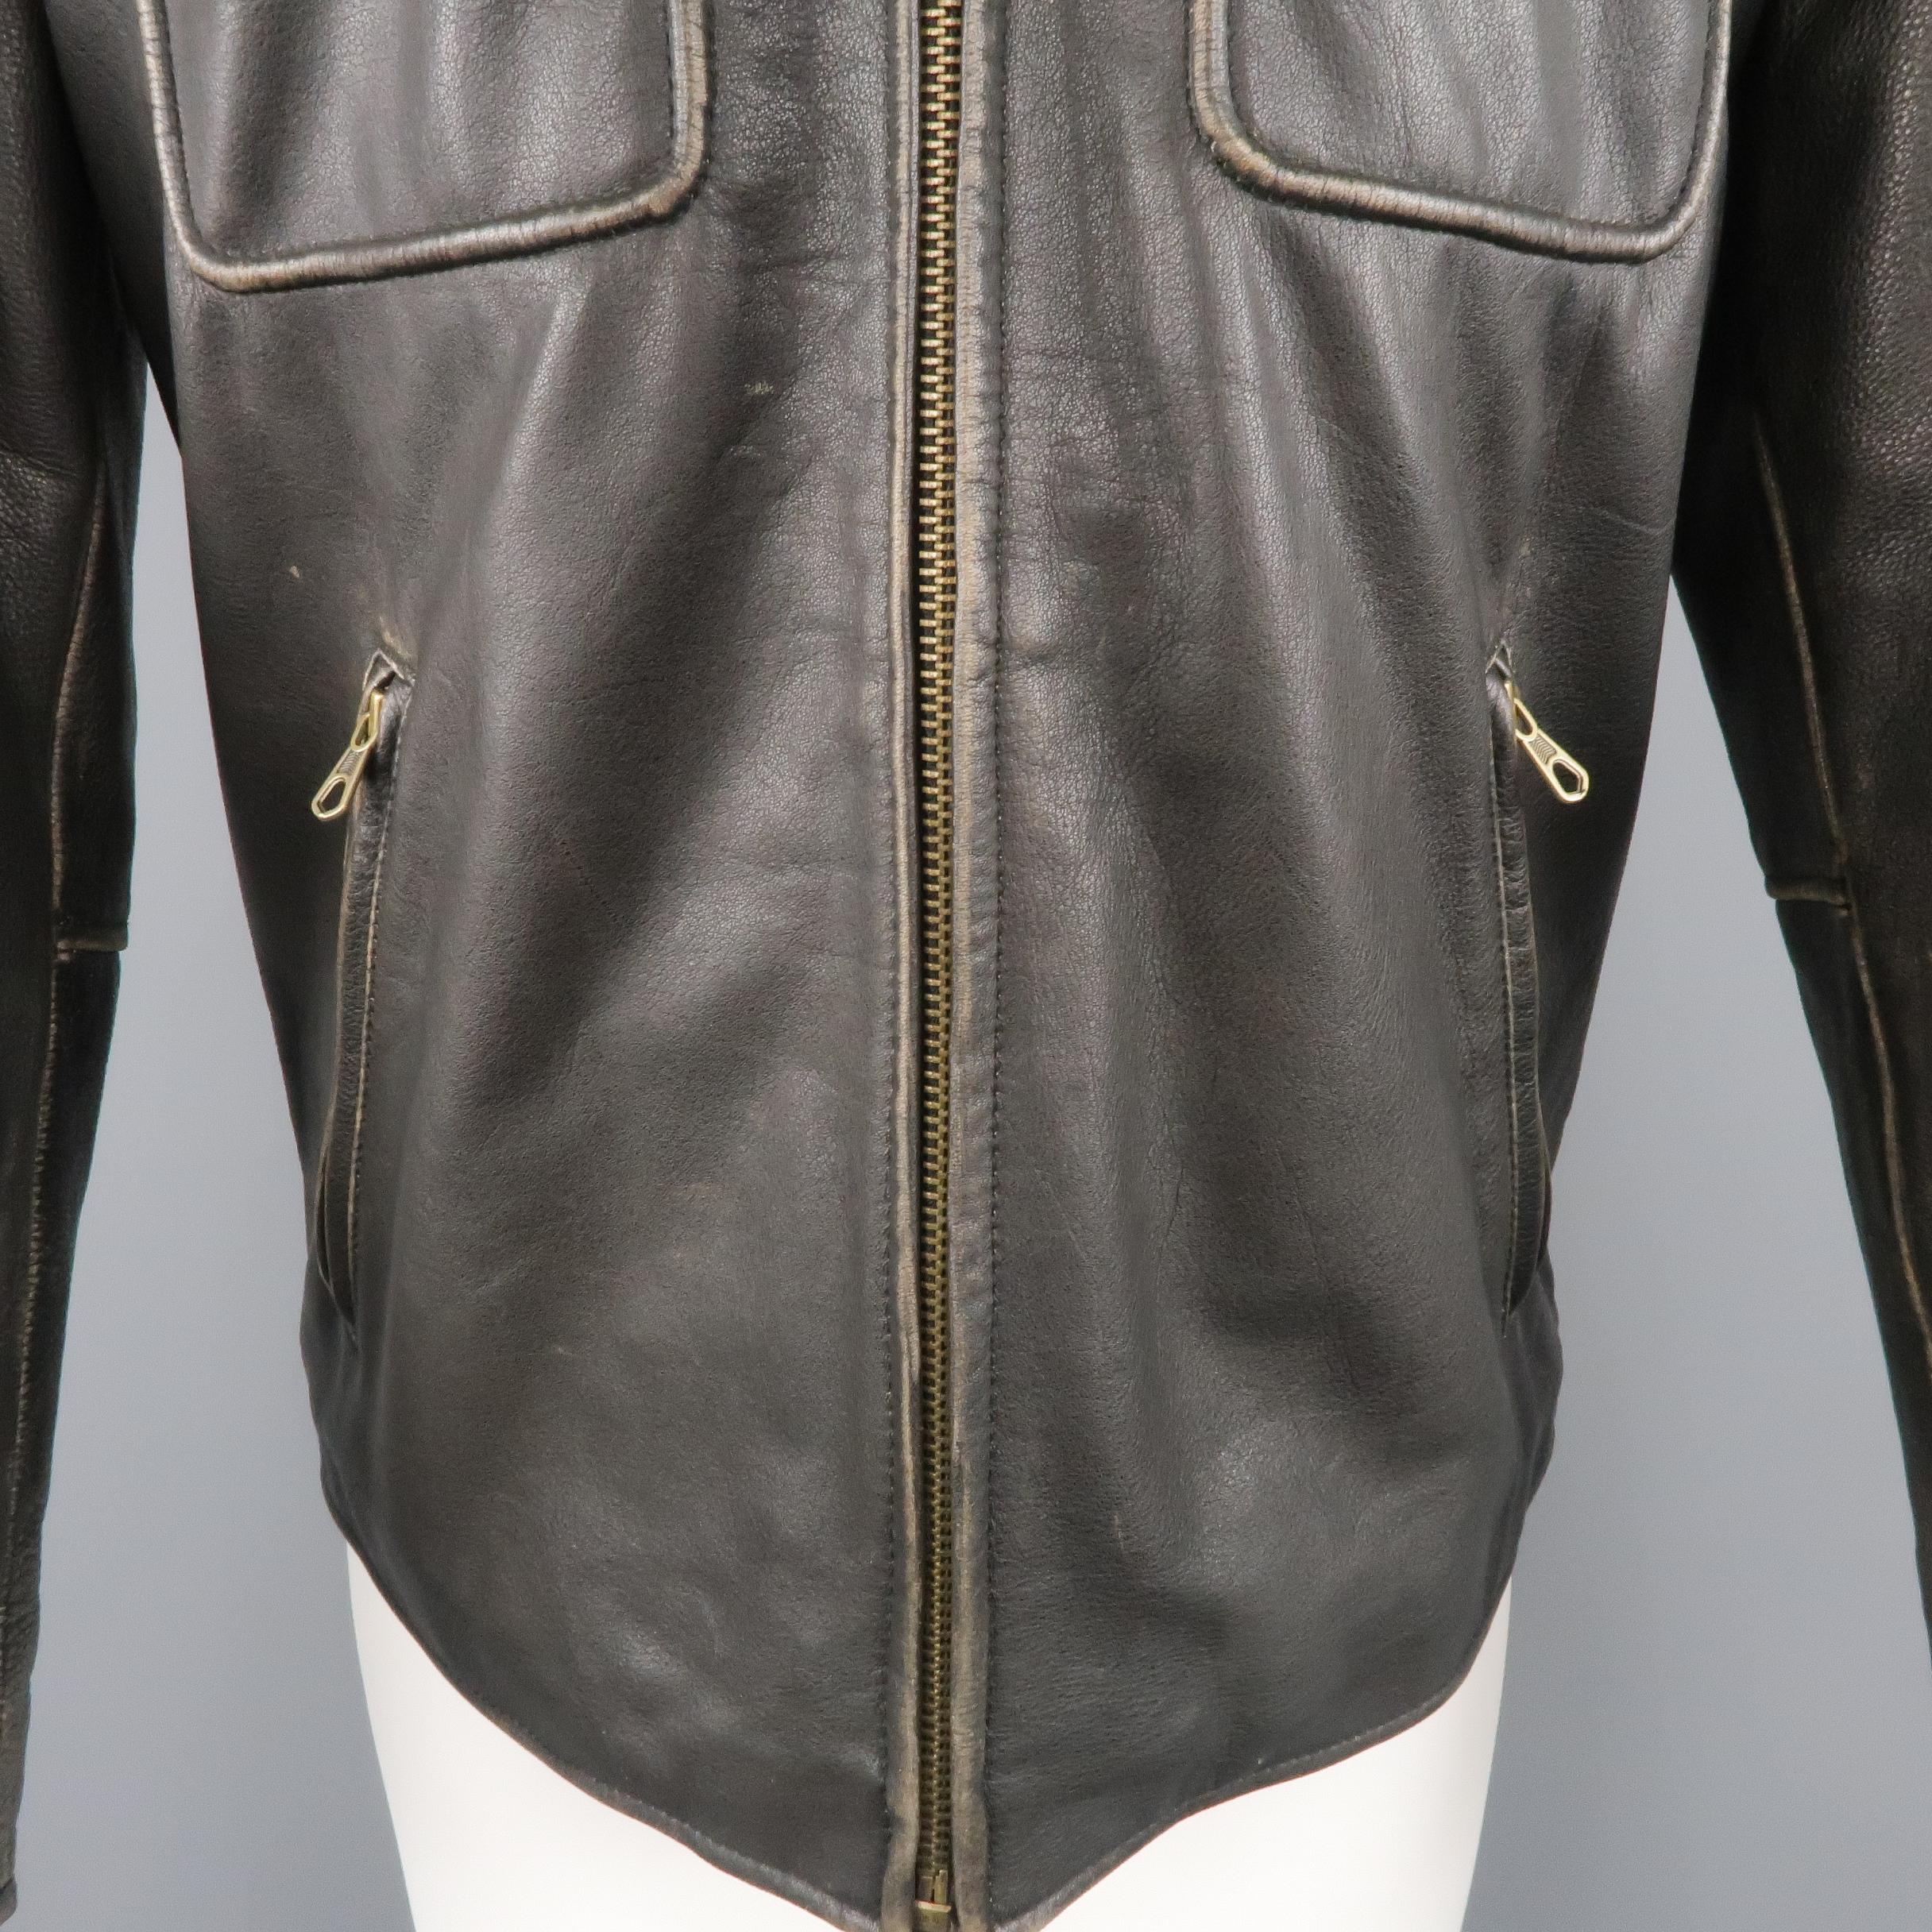 Men's GOLDEN BEAR 42 Dark Brown Distressed Leather Snap Pocket Jacket